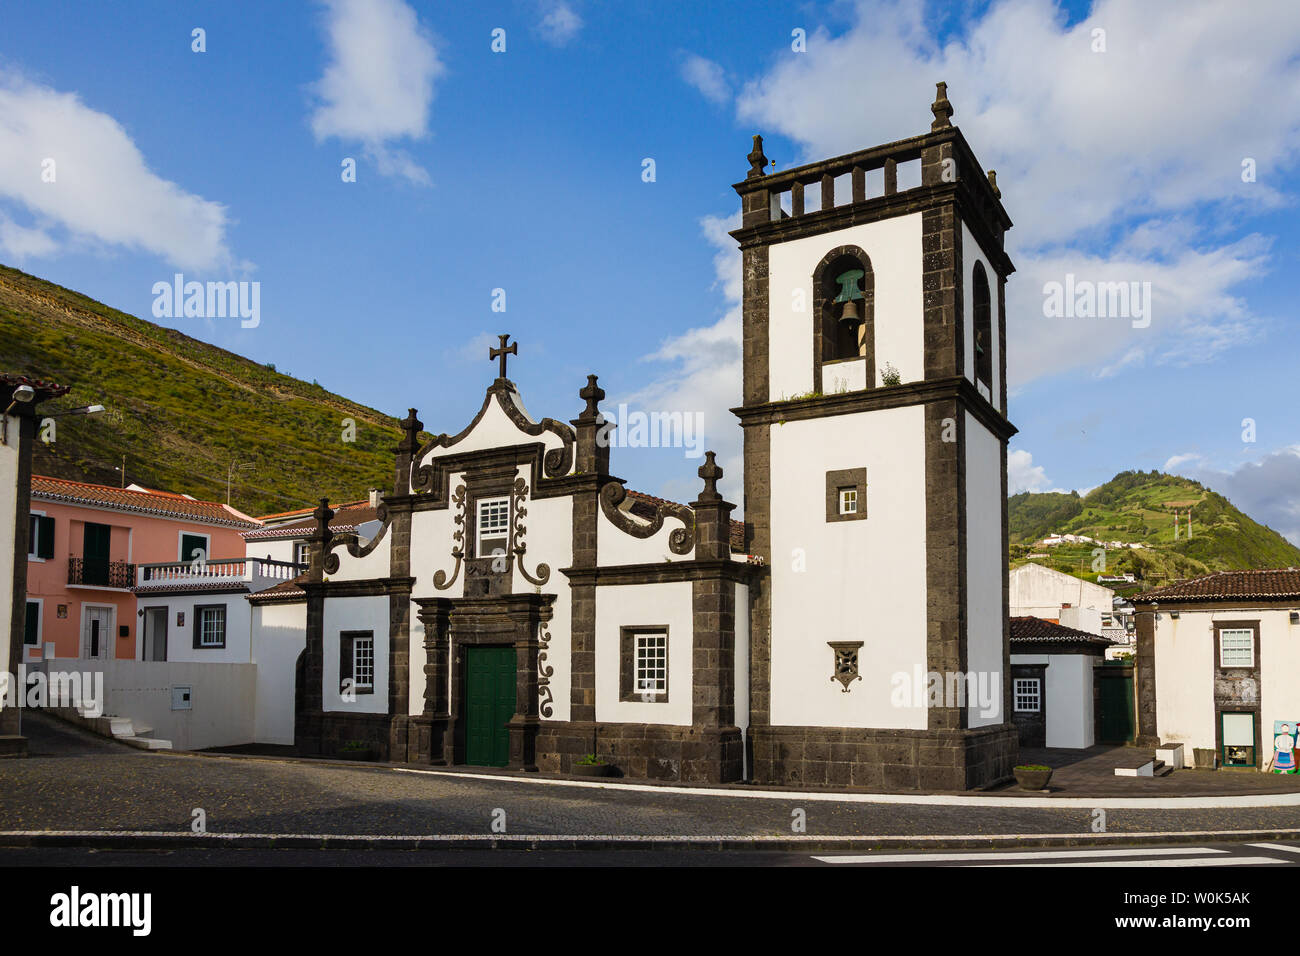 Church and Centro De Turismo in Povoacao on Sao Miguel Island, Azores archipelago, Portugal Stock Photo